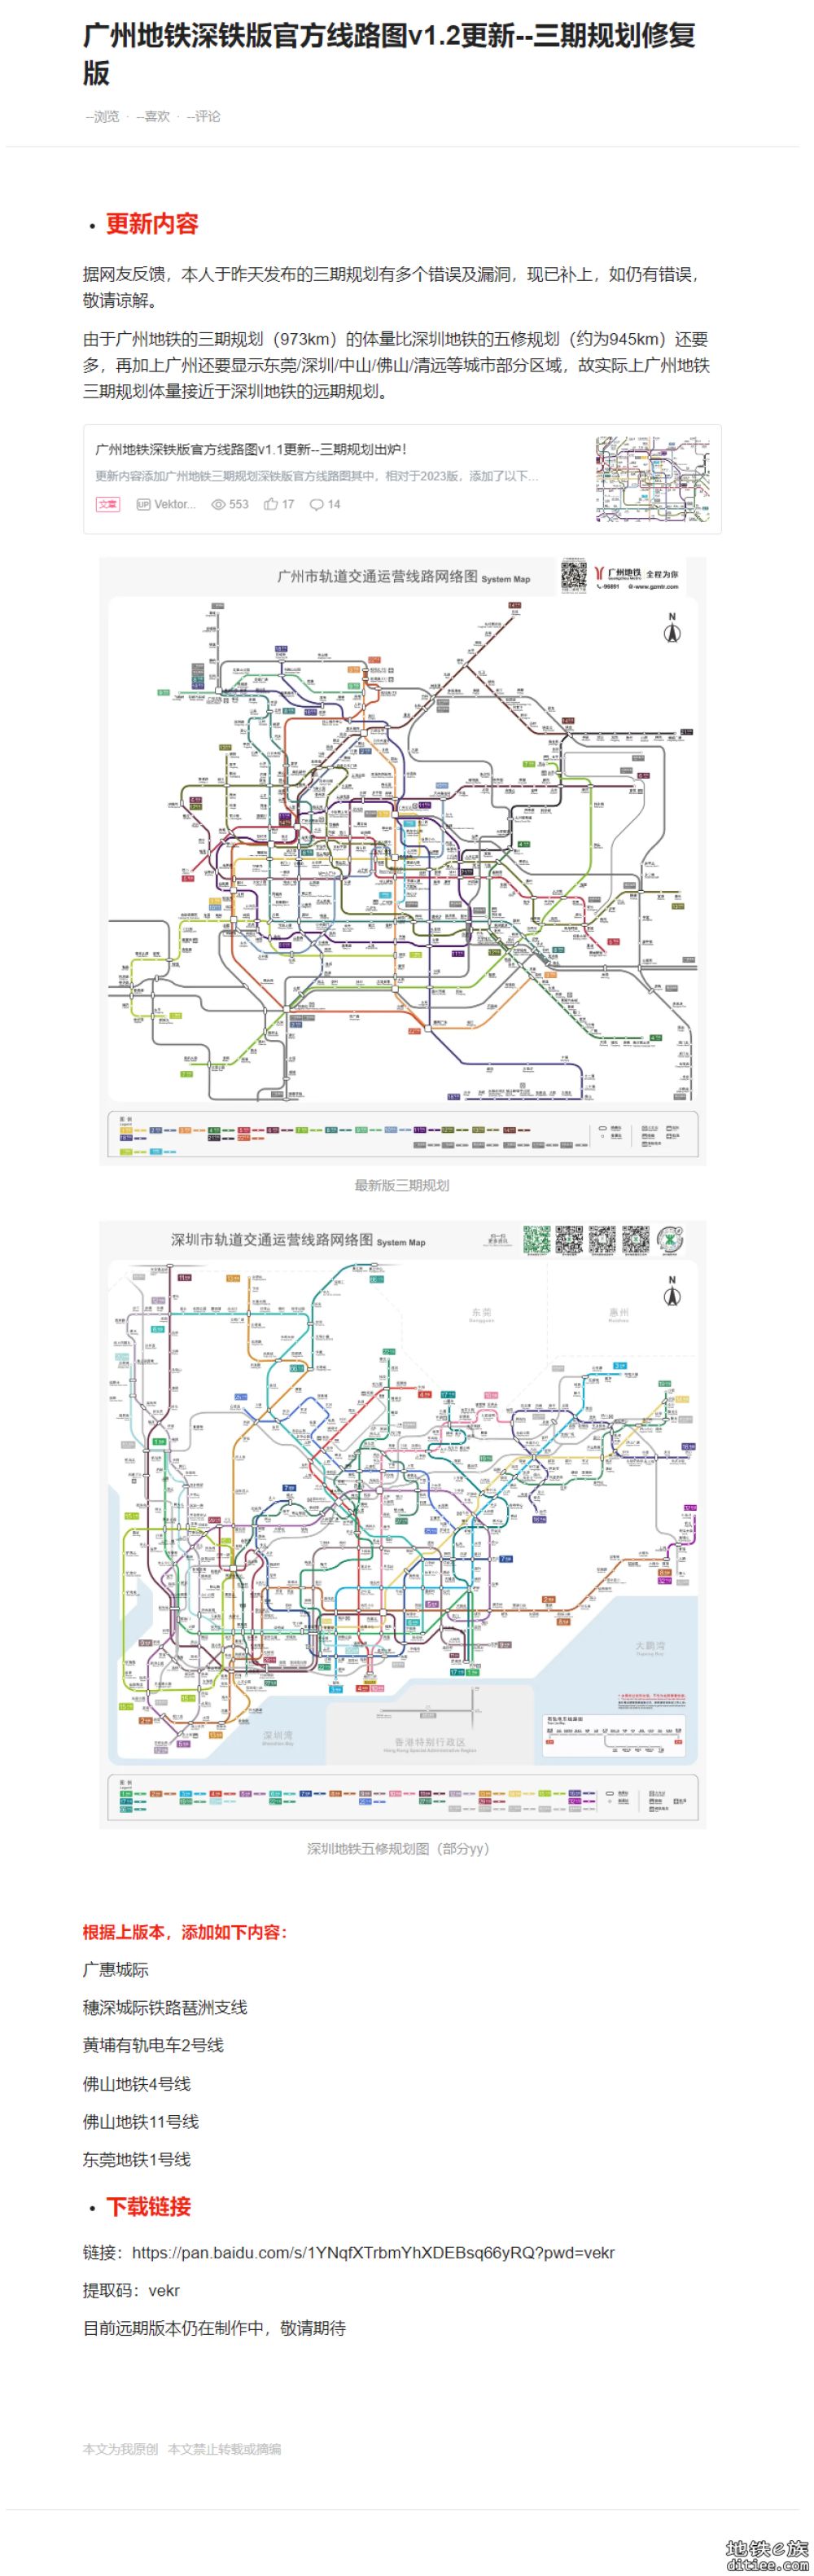 广州地铁变形线路图，但是模仿深铁官方风格